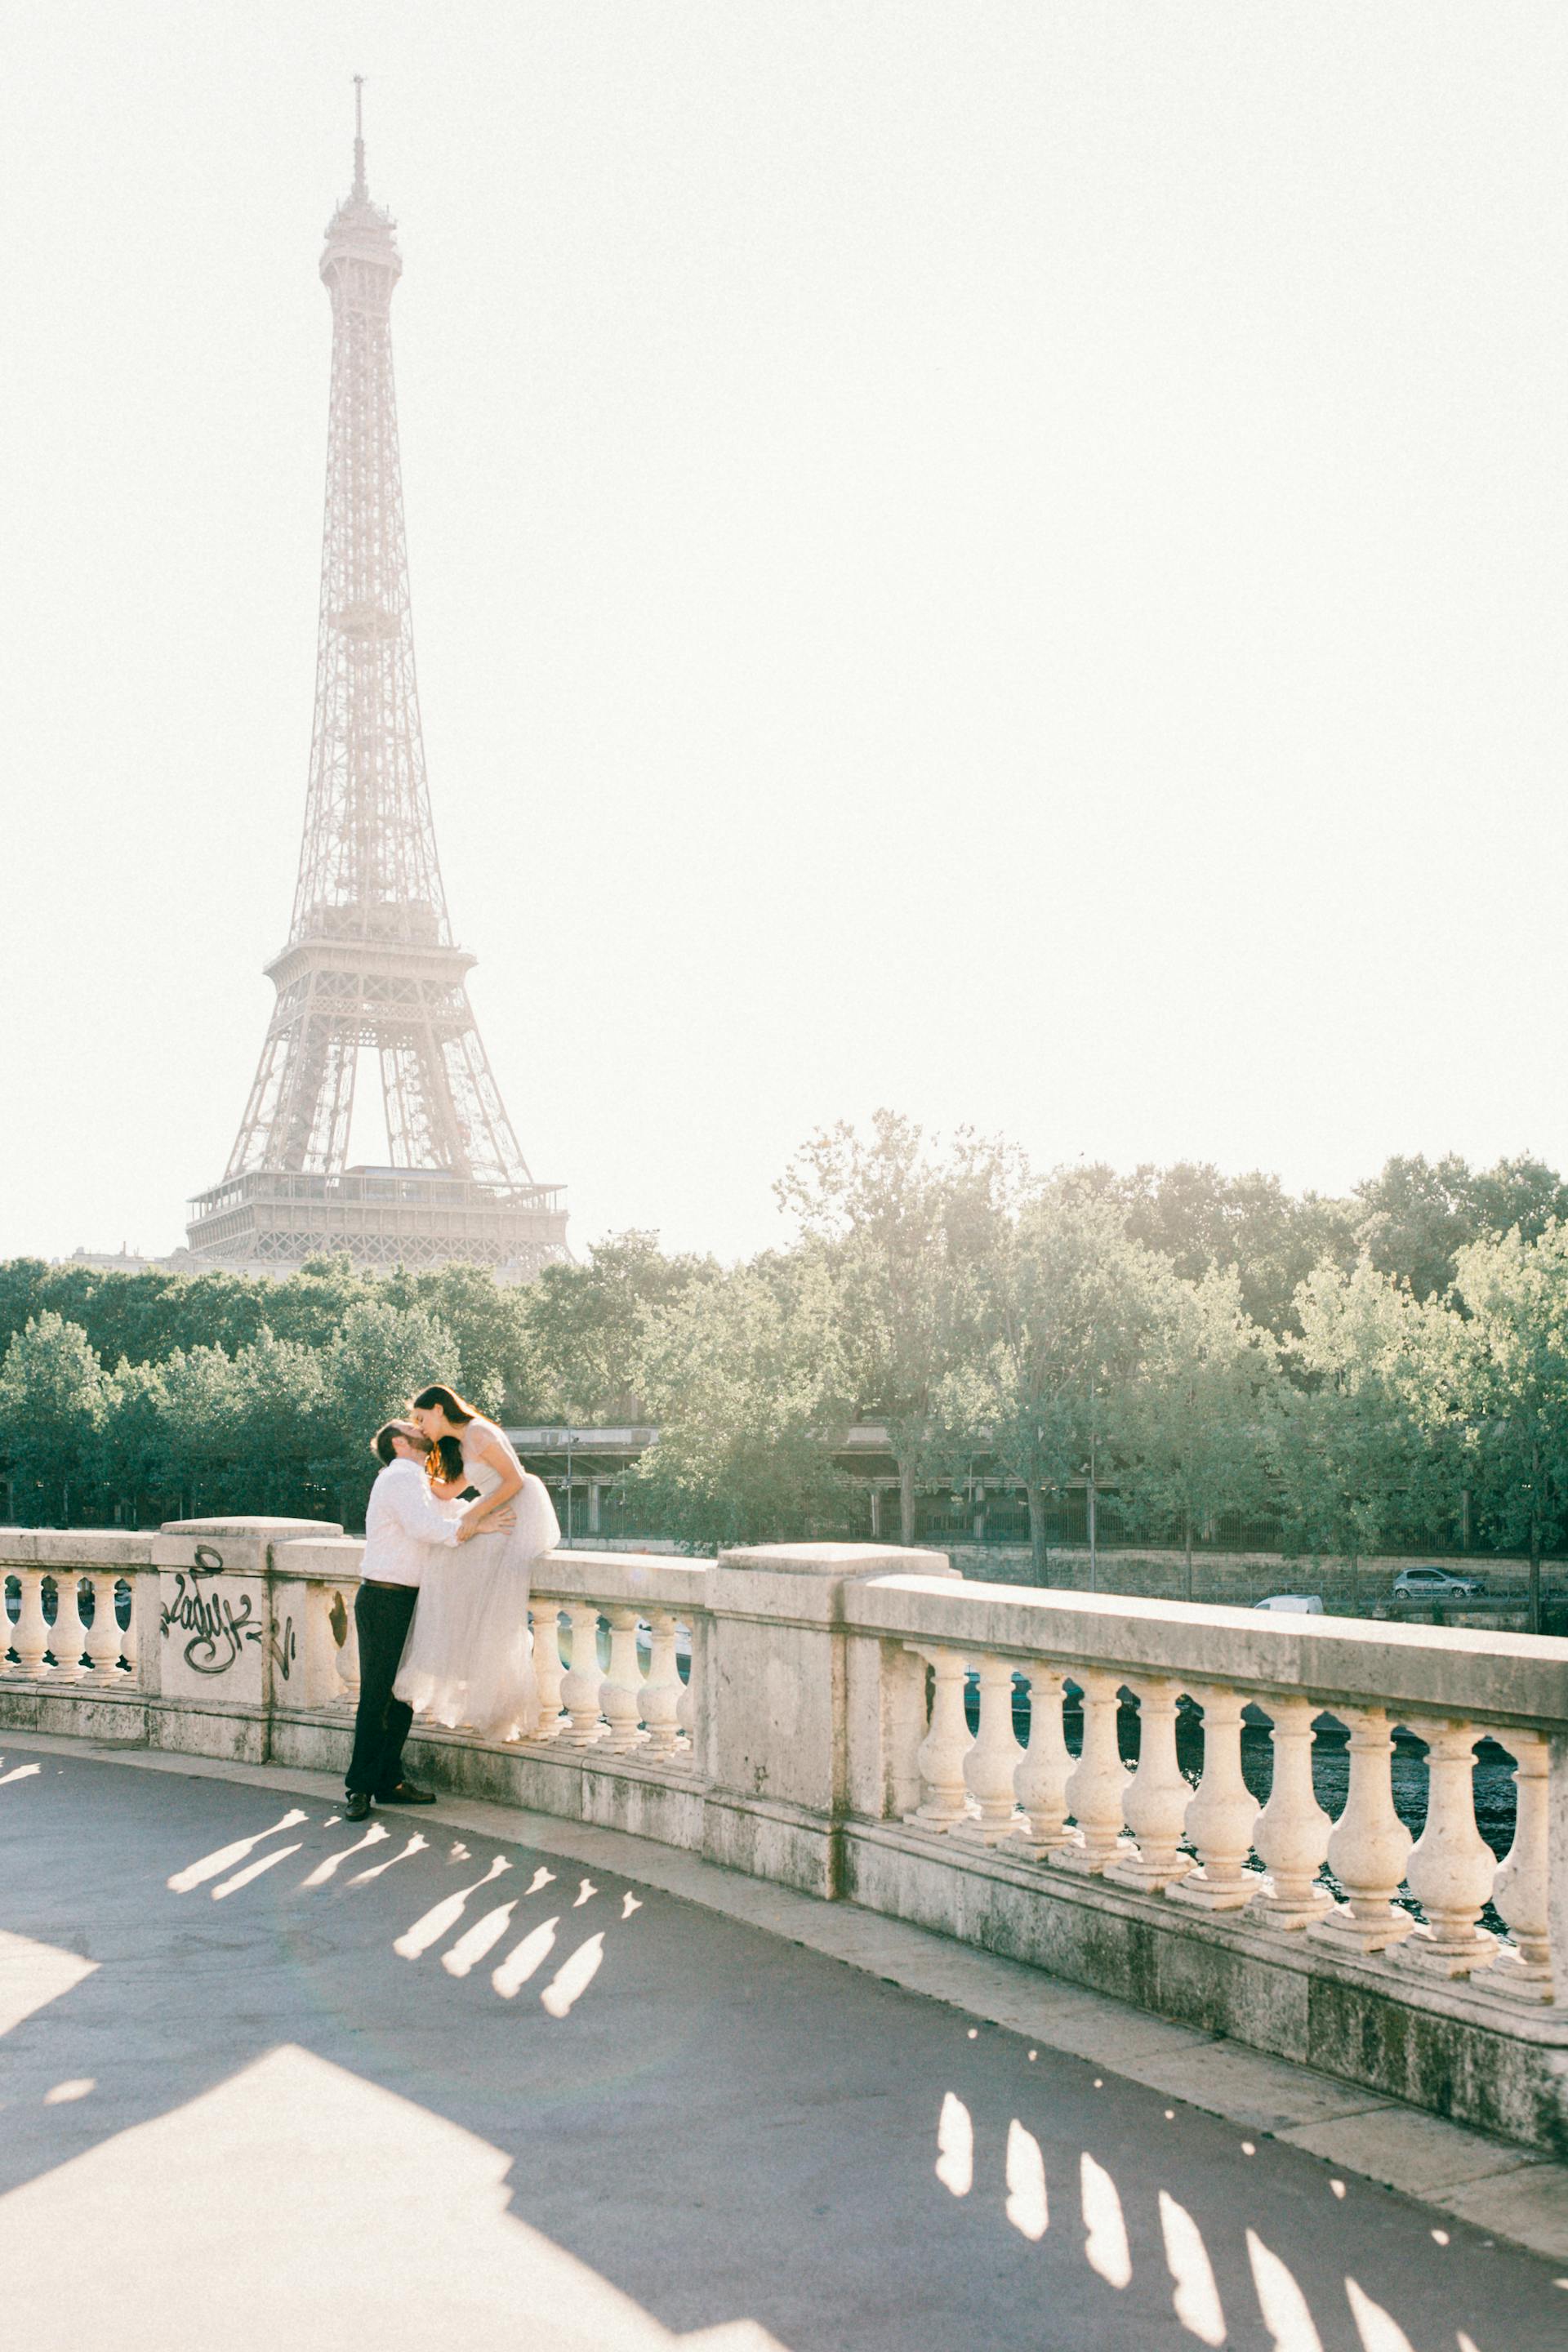 A couple in Paris | Source: Pexels